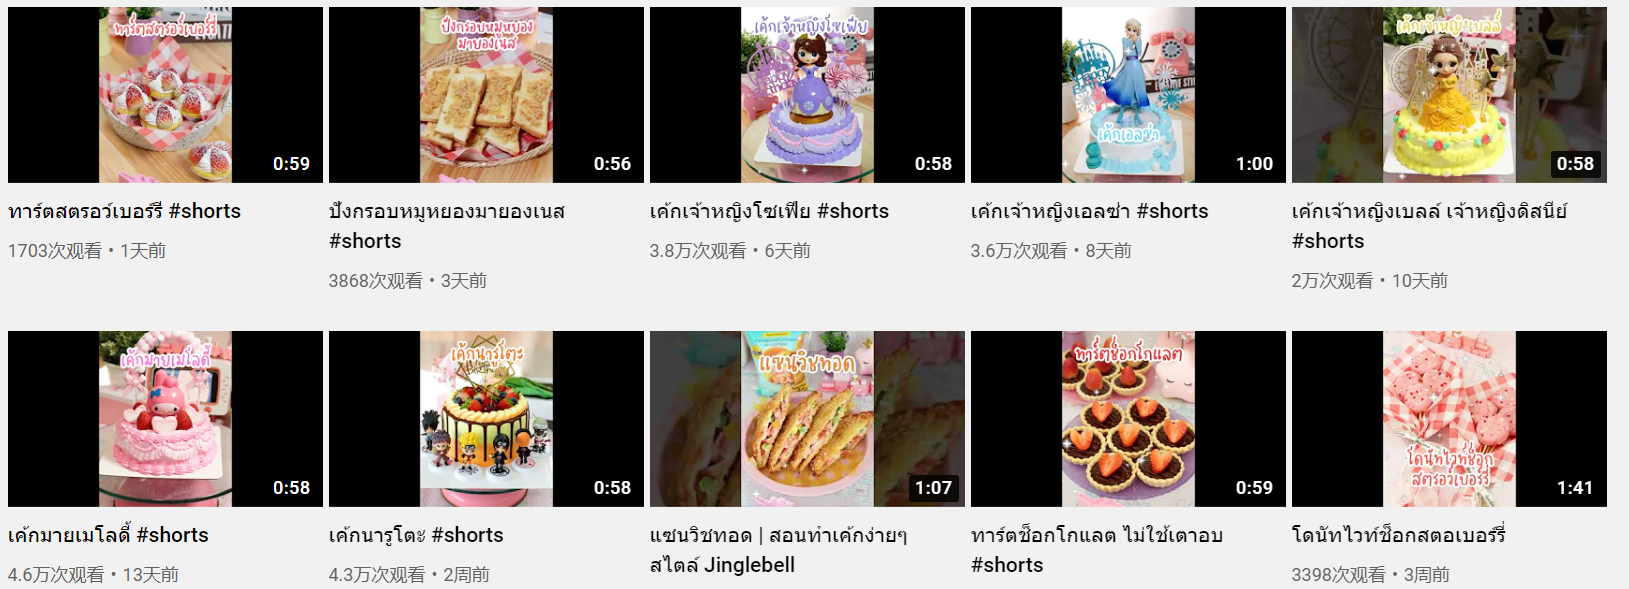 泰国YouTube红人频道内容